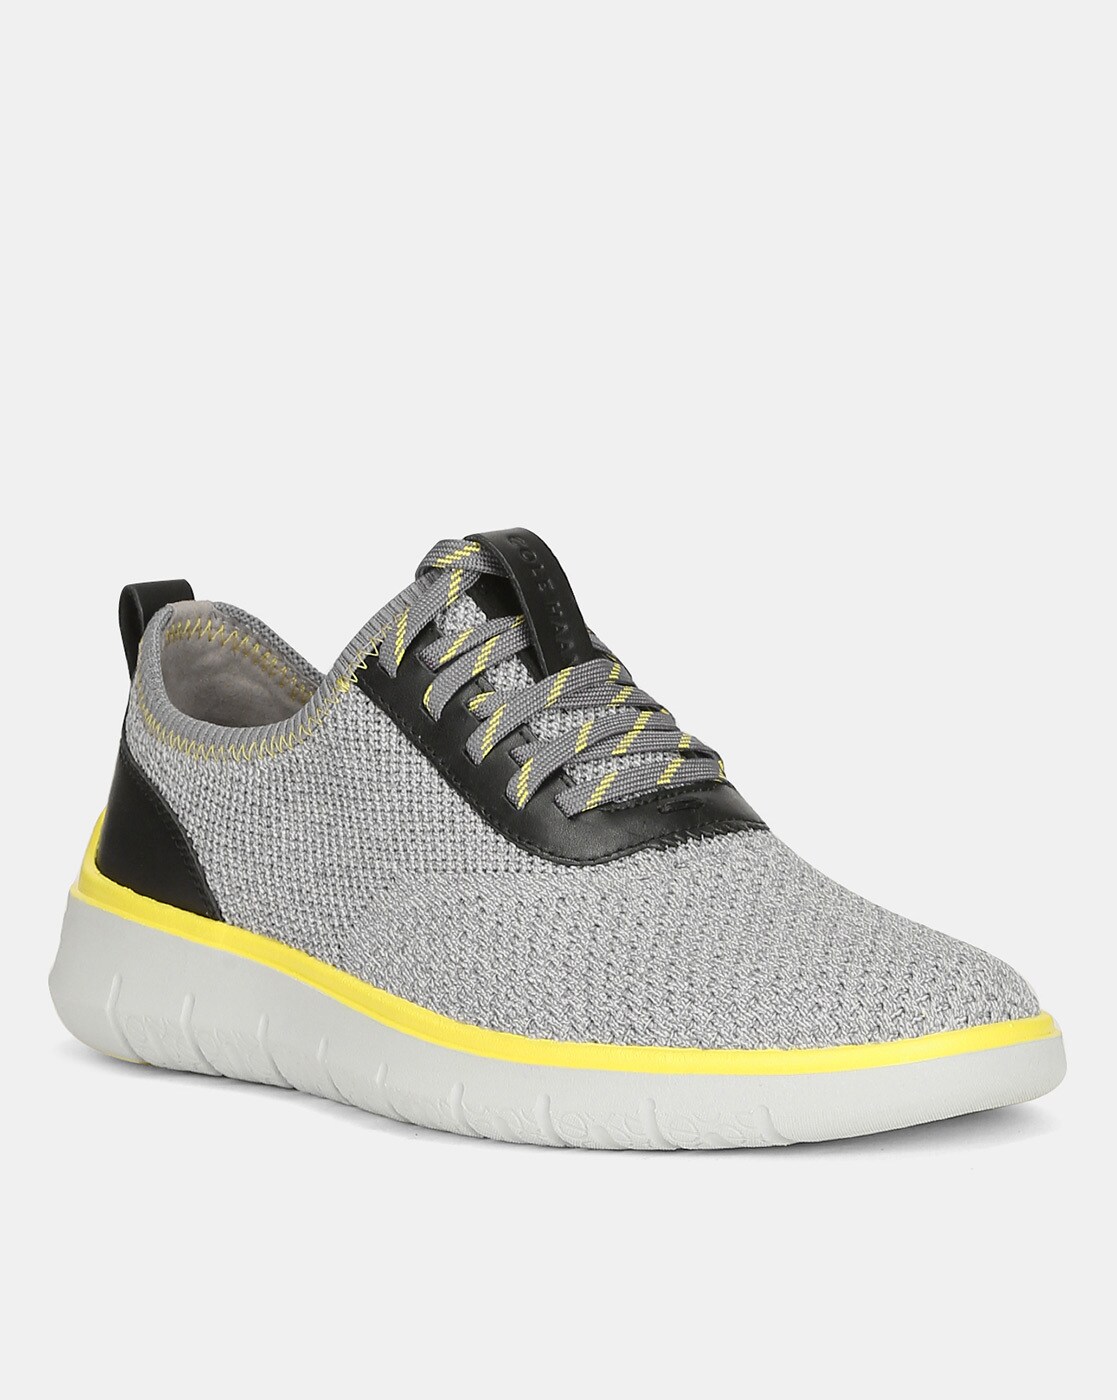 cole haan gray sneakers